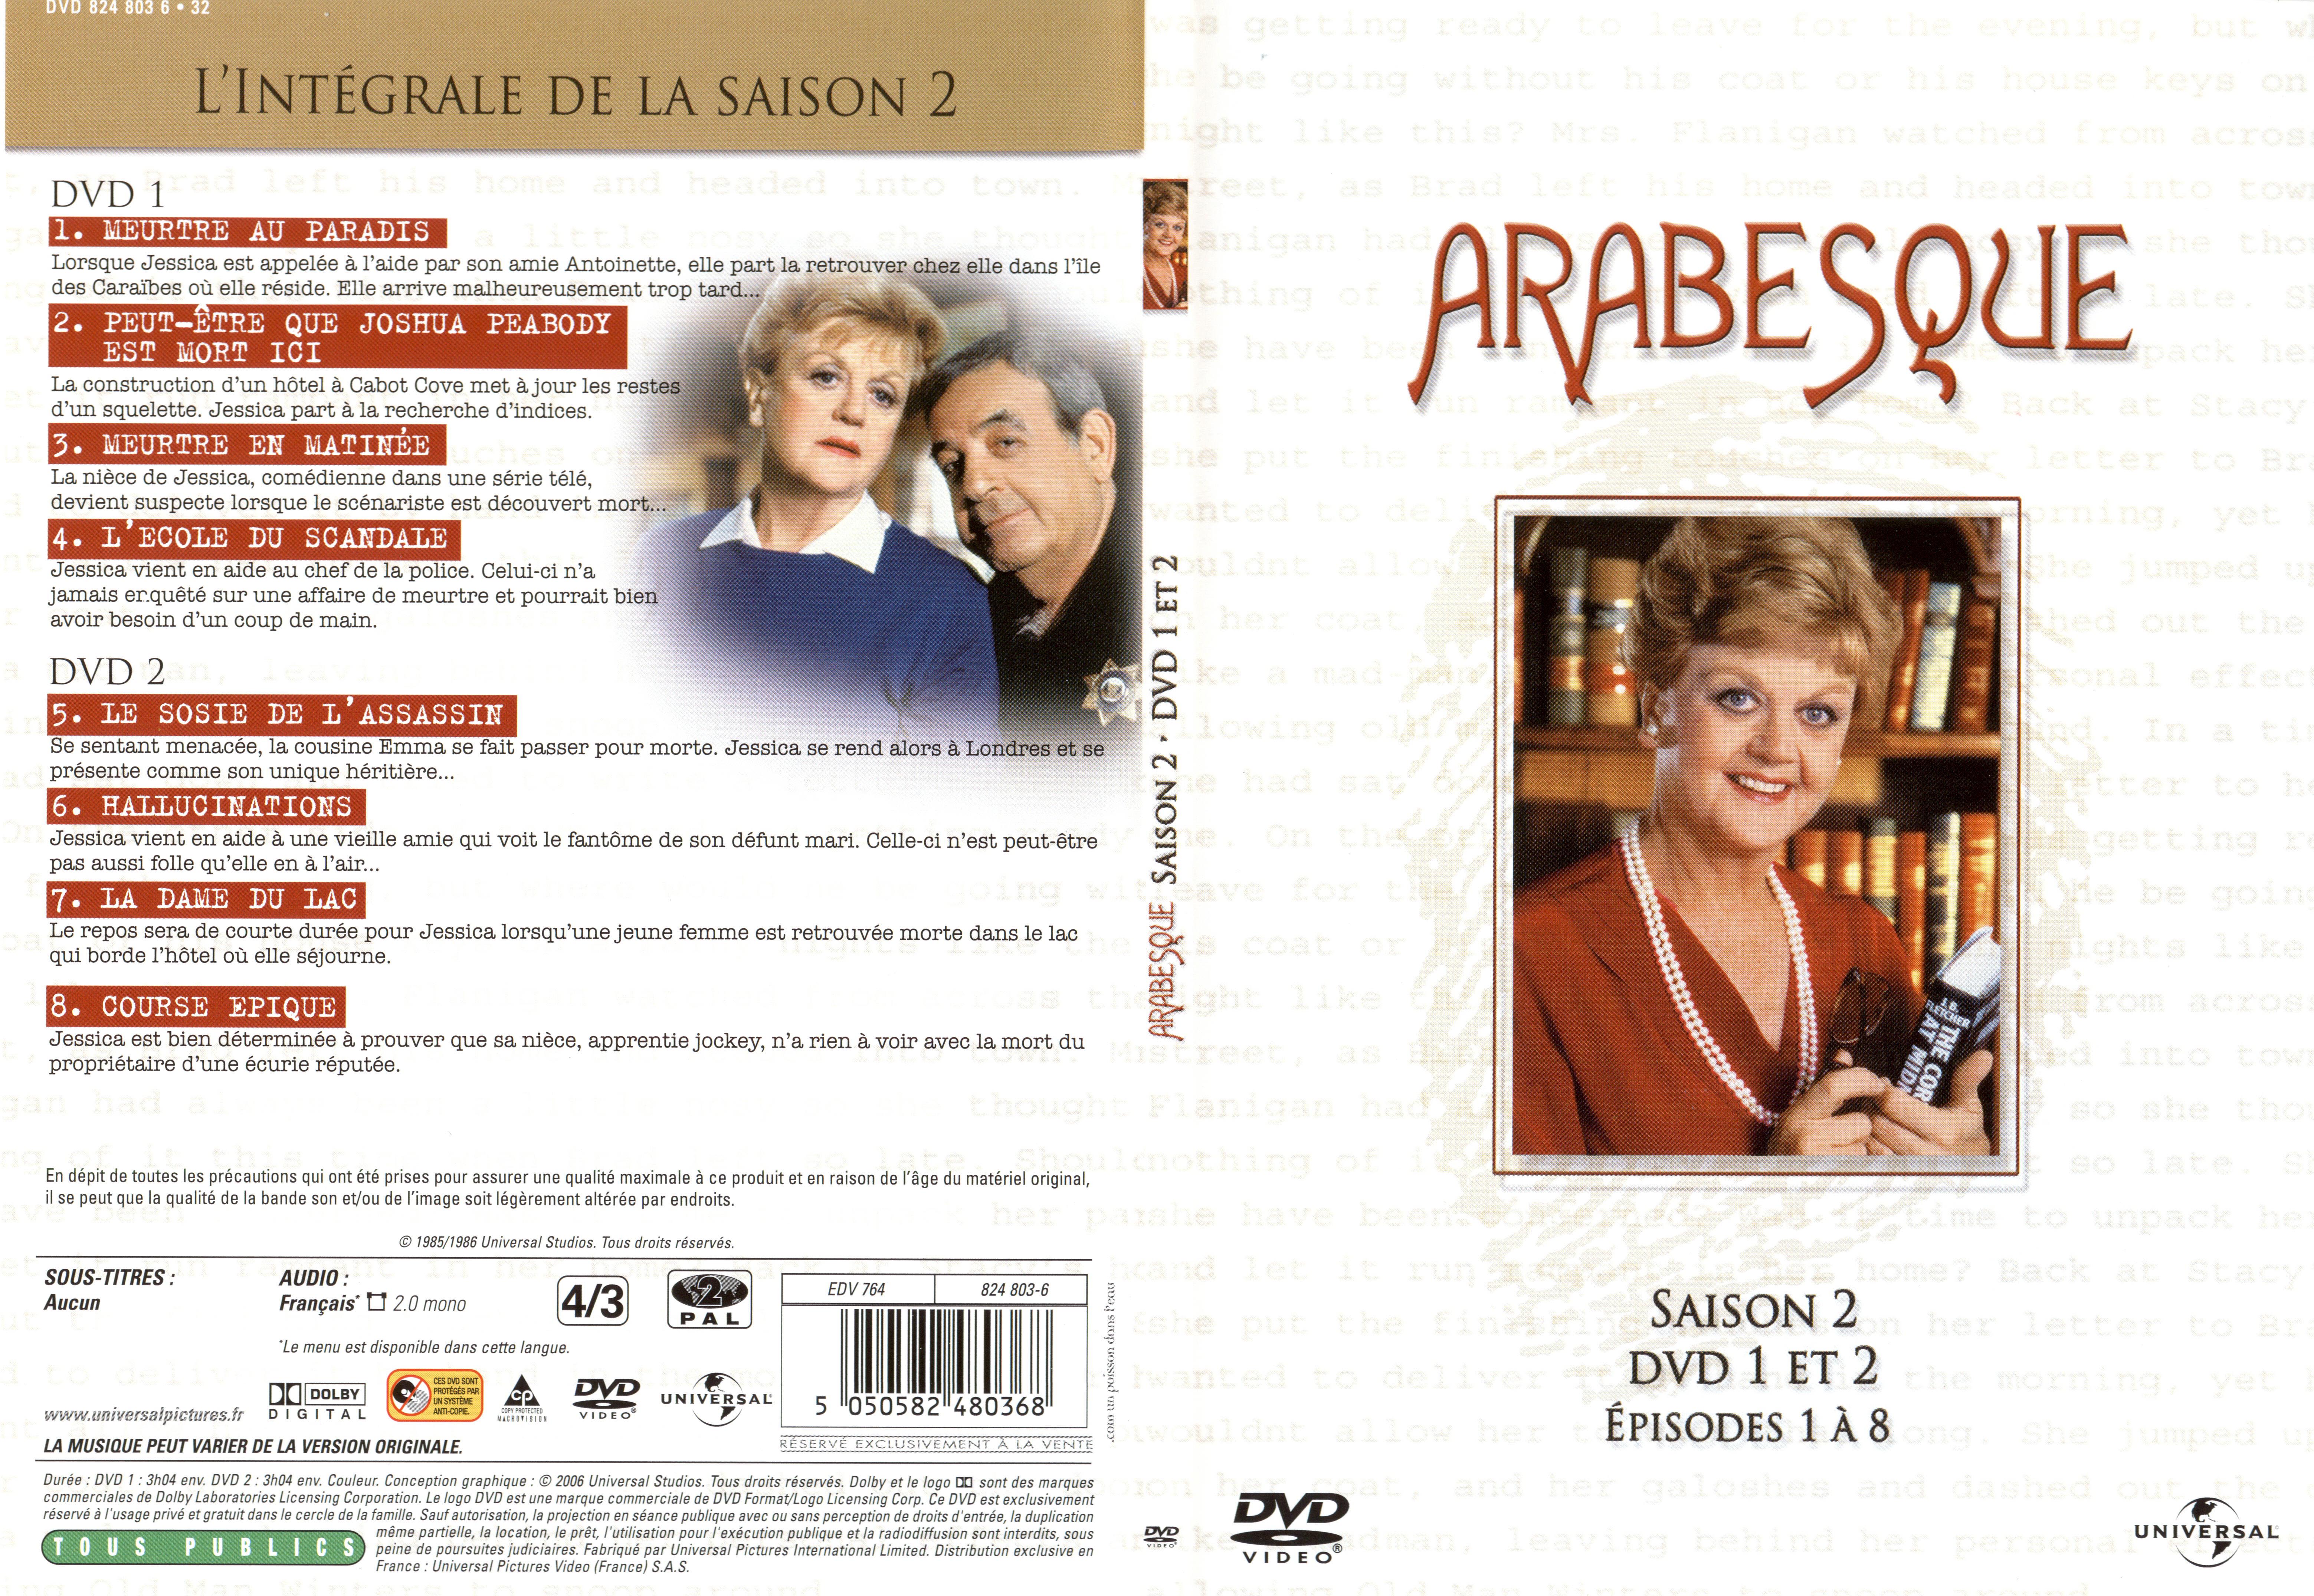 Jaquette DVD Arabesque Saison 2 DVD 1 et 2